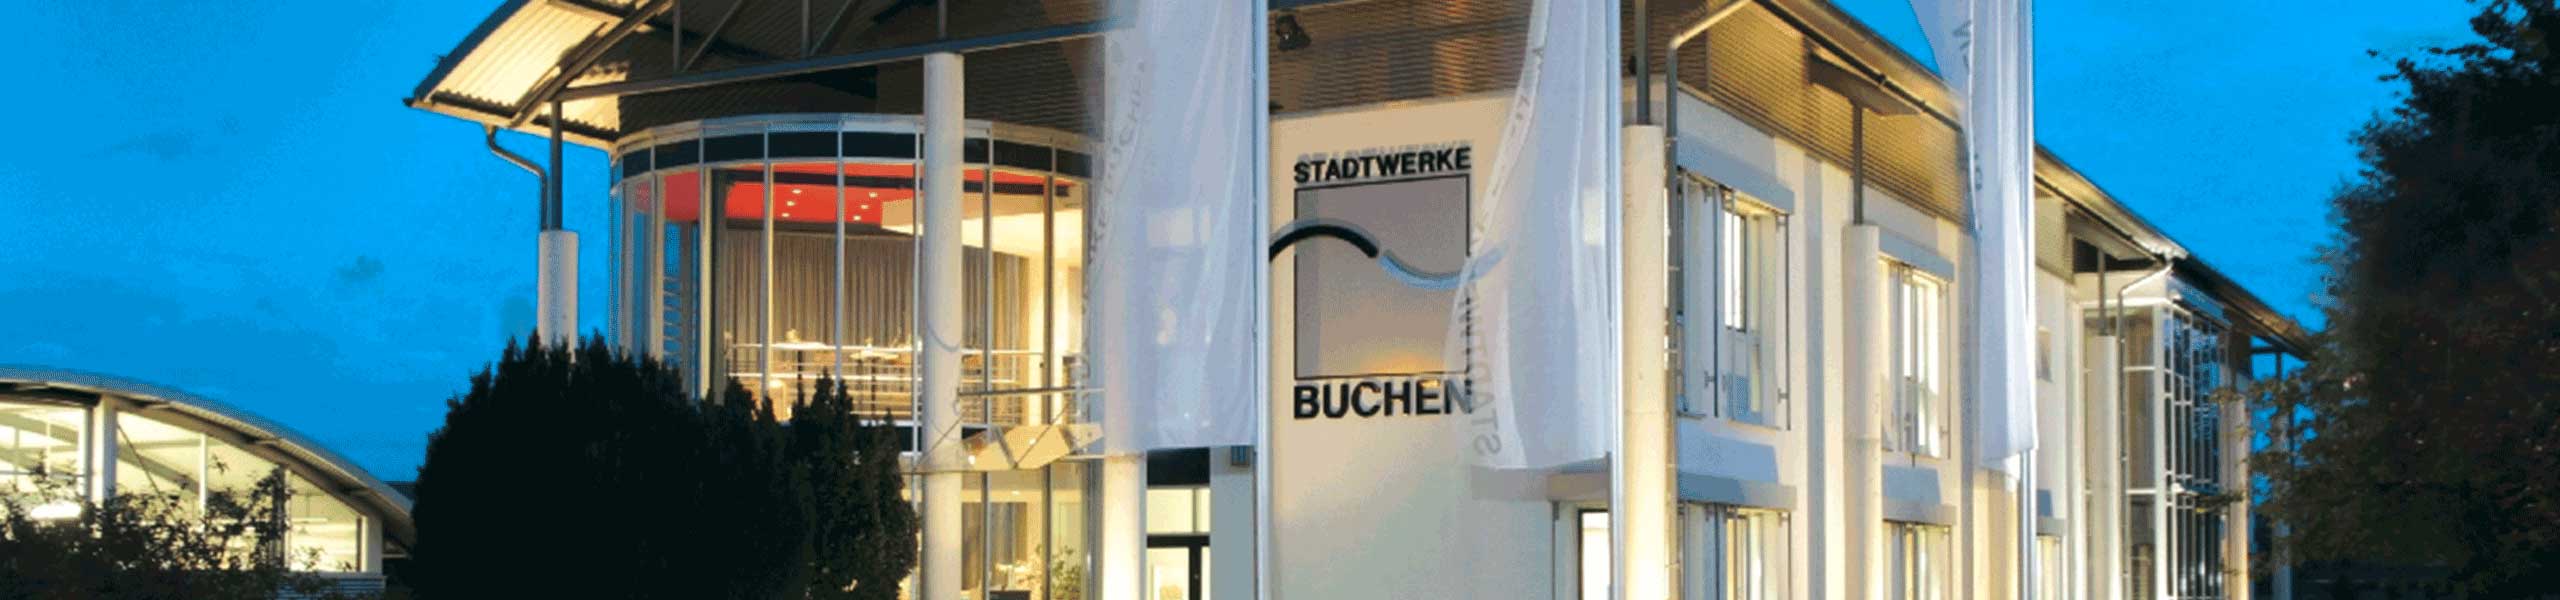 Stadtwerke Buchen GmbH & Co KG - Stromausfall am 5. Dezember